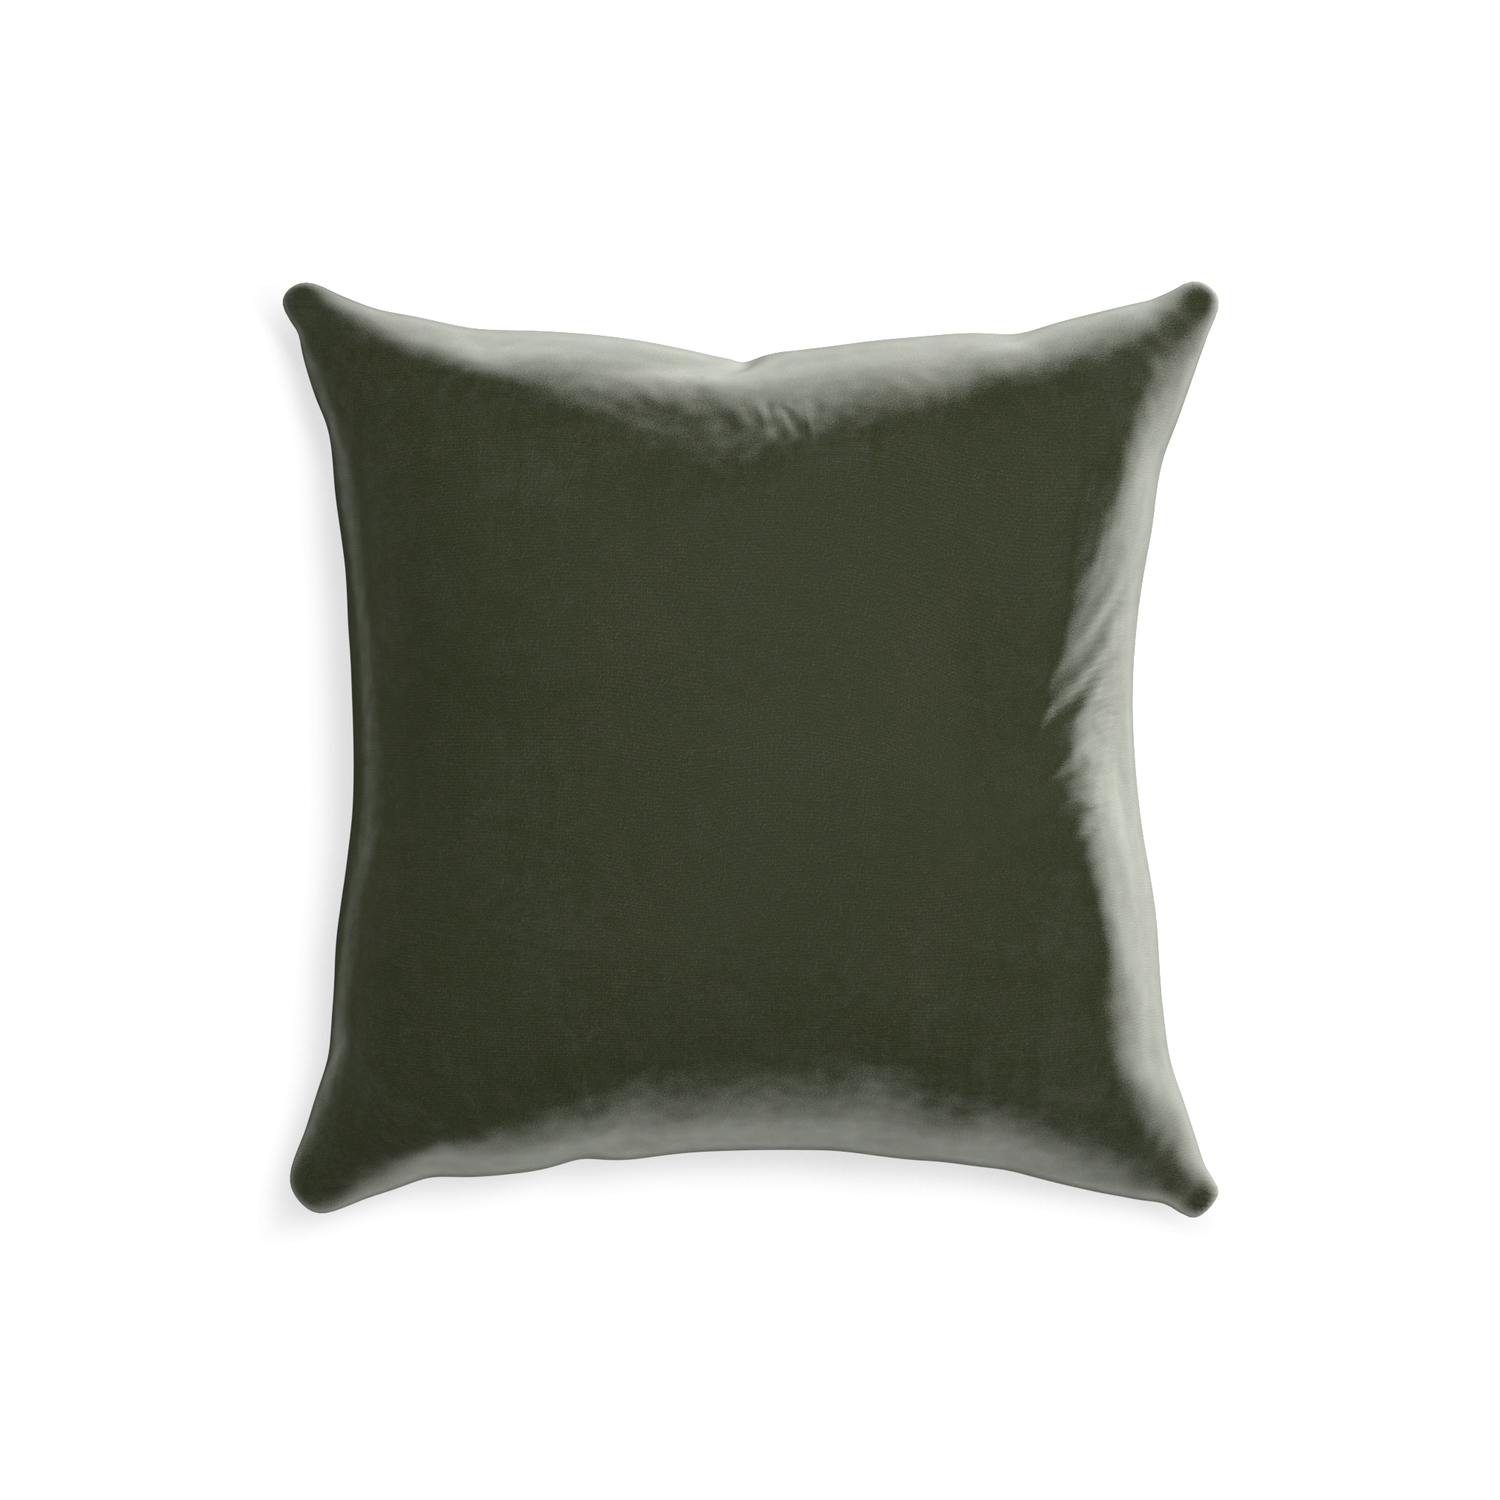 20-square fern velvet custom pillow with none on white background